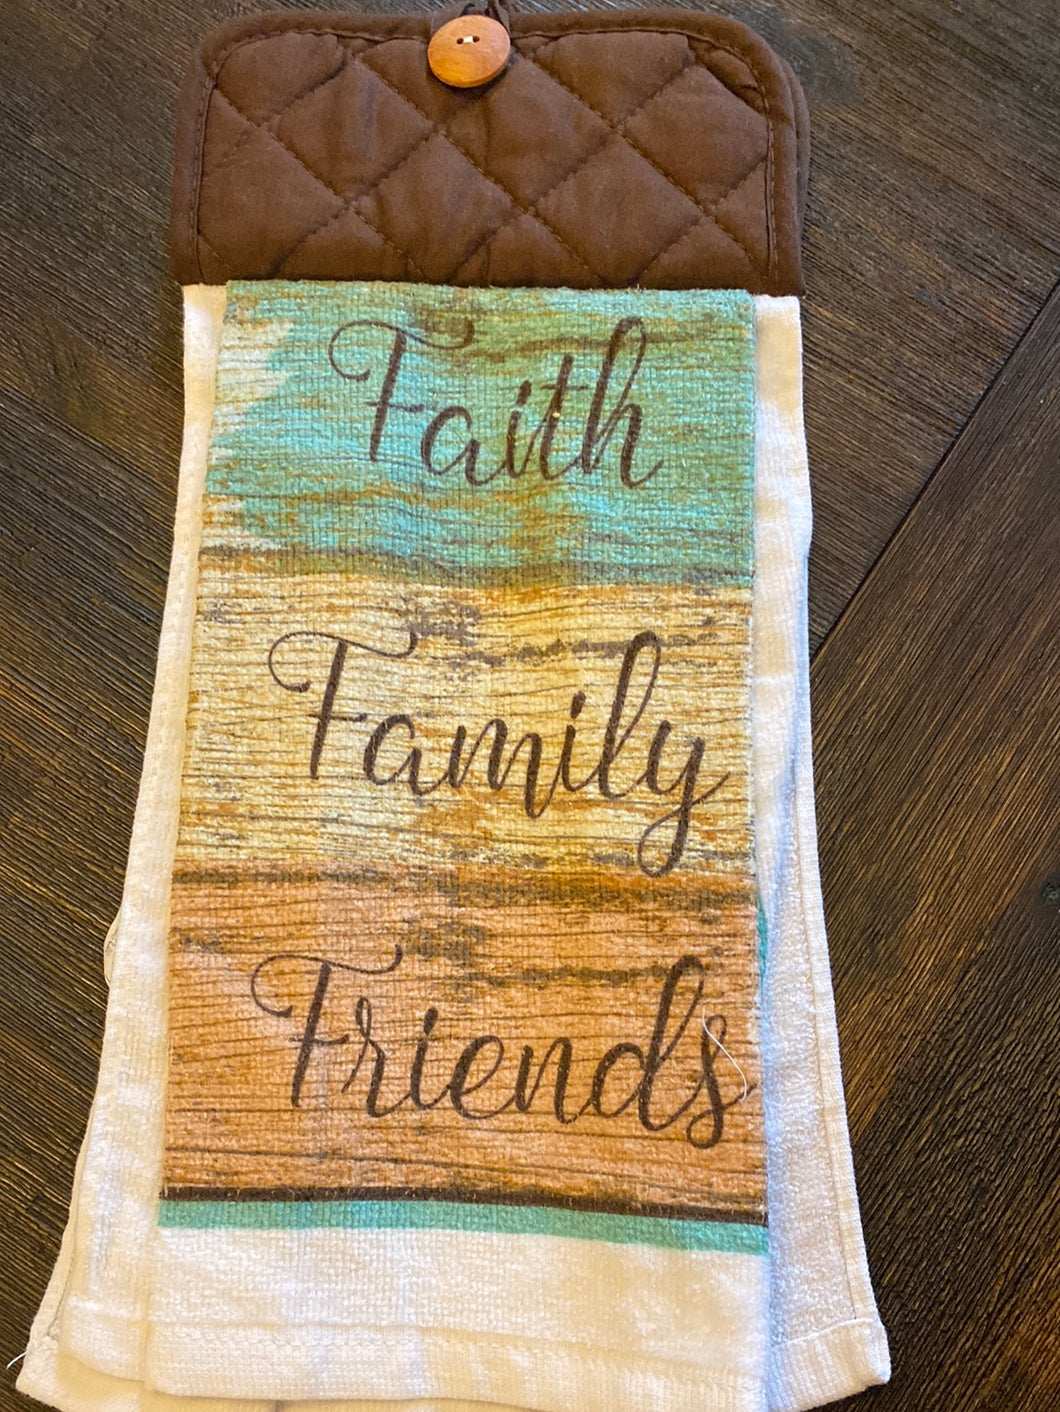 Faith,Family, Friends